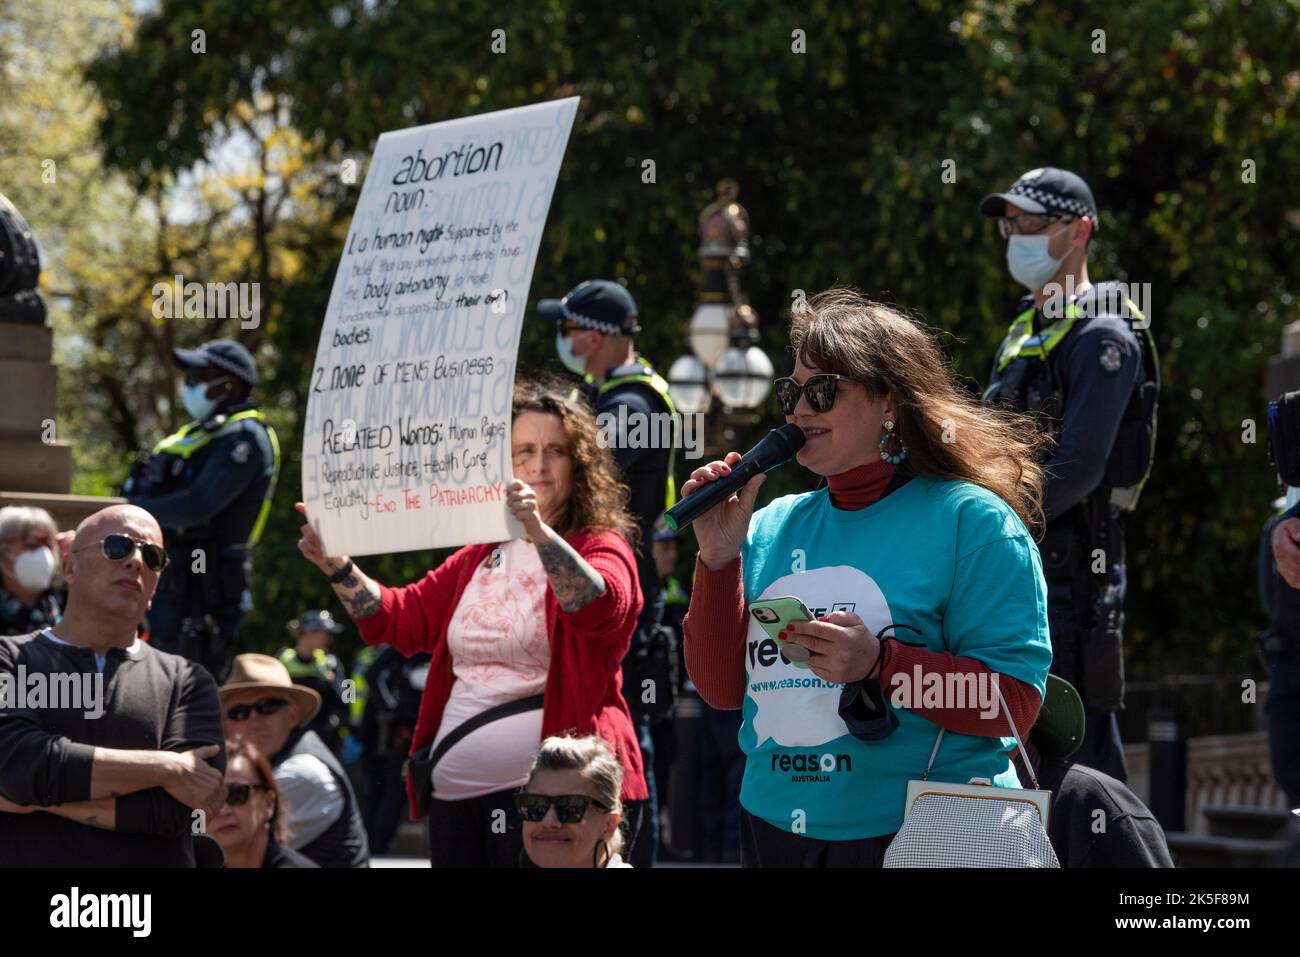 8.. Oktober 2022, Melbourne, Australien. Ein Mitglied der Reason Party spricht bei einem Gegenprotest für Abtreibungen, als Reaktion auf Bernie Finns Marsch für die Babys, der jährlich stattfindet. Quelle: Jay Kogler/Alamy Live News Stockfoto